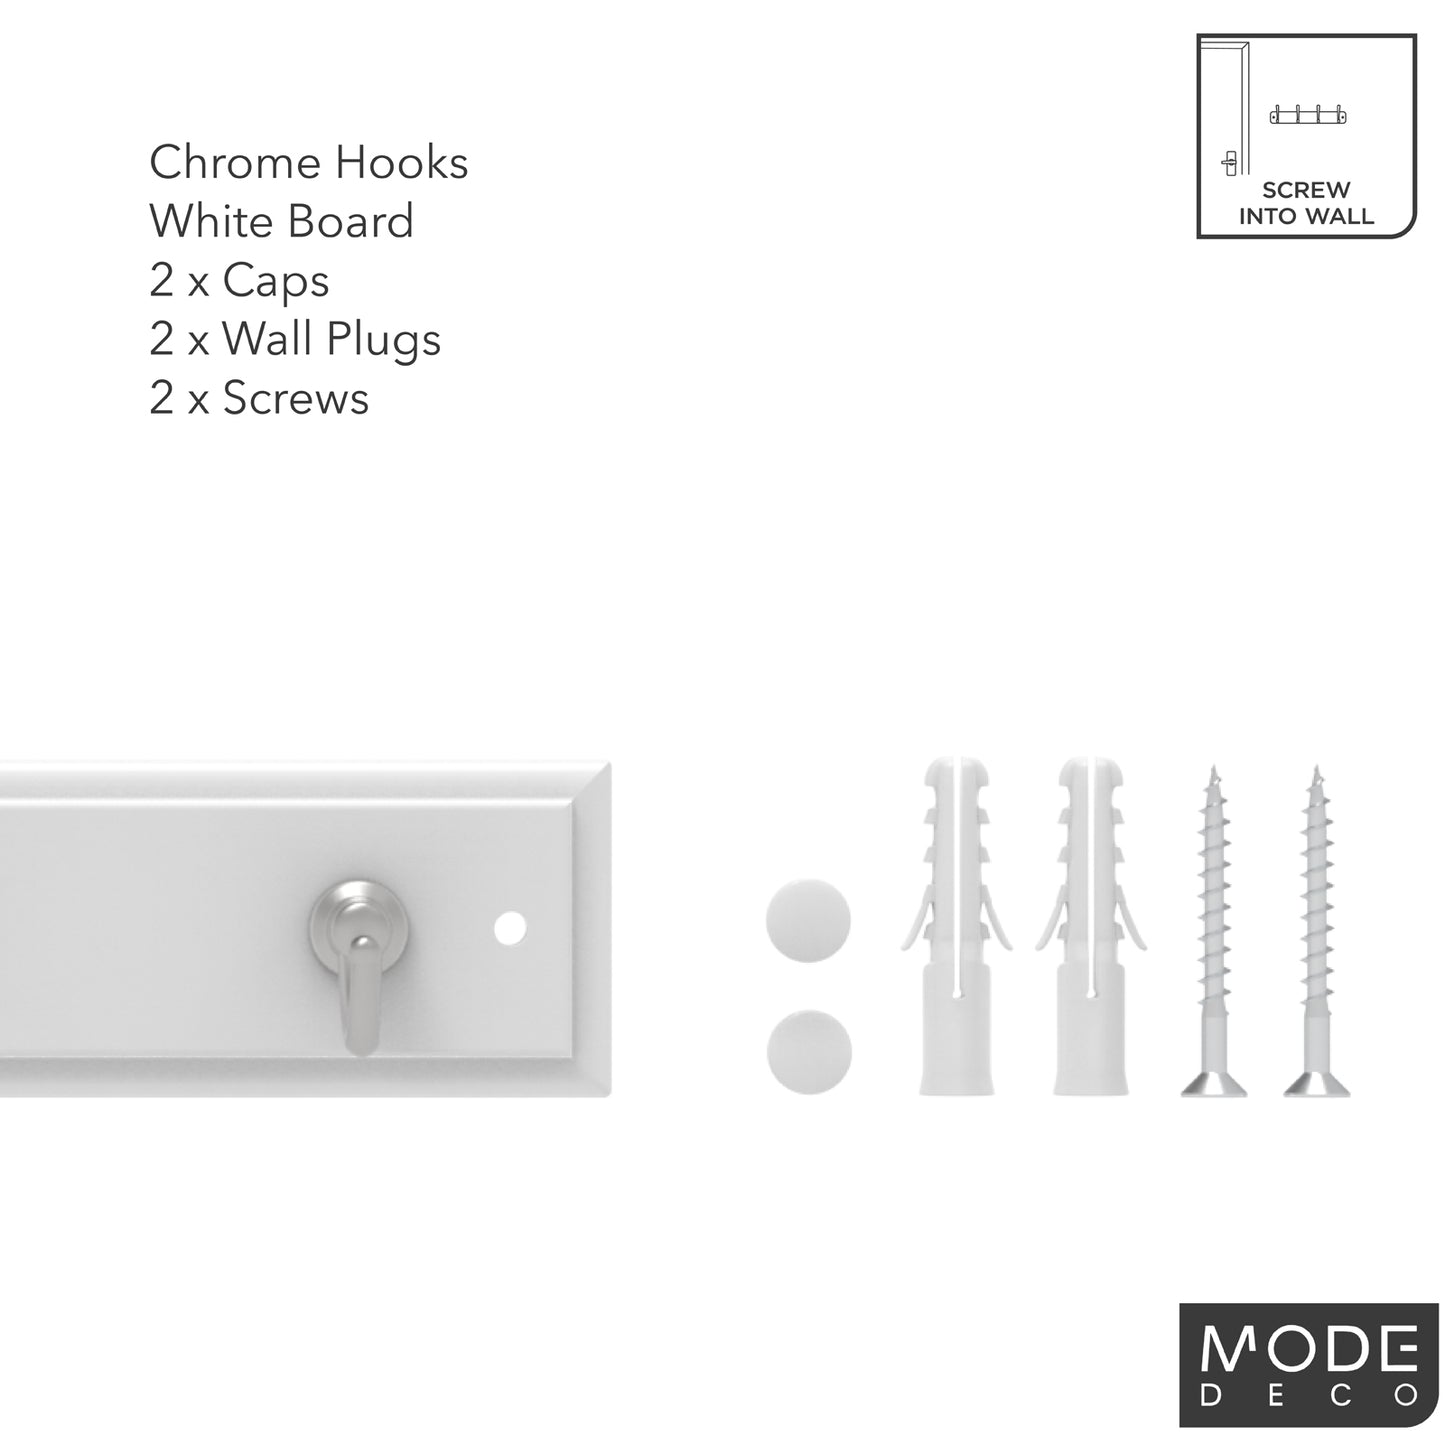 4 Chrome Hooks on White Board Key Rack